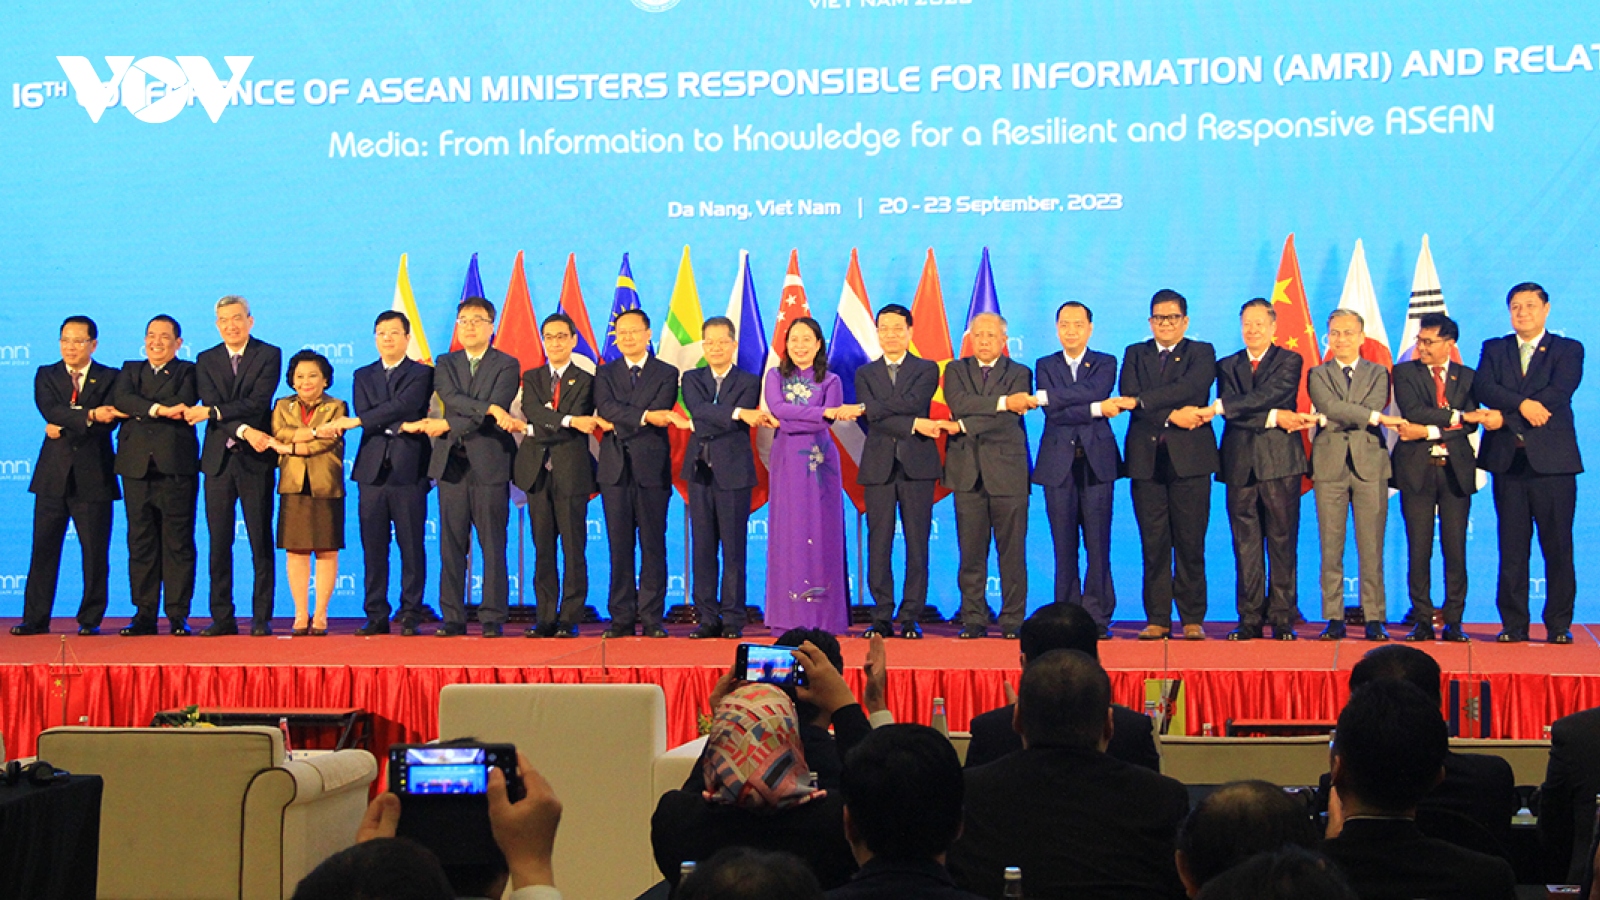 Khai mạc Hội nghị Bộ trưởng Thông tin ASEAN lần thứ 16 (AMRI-16)